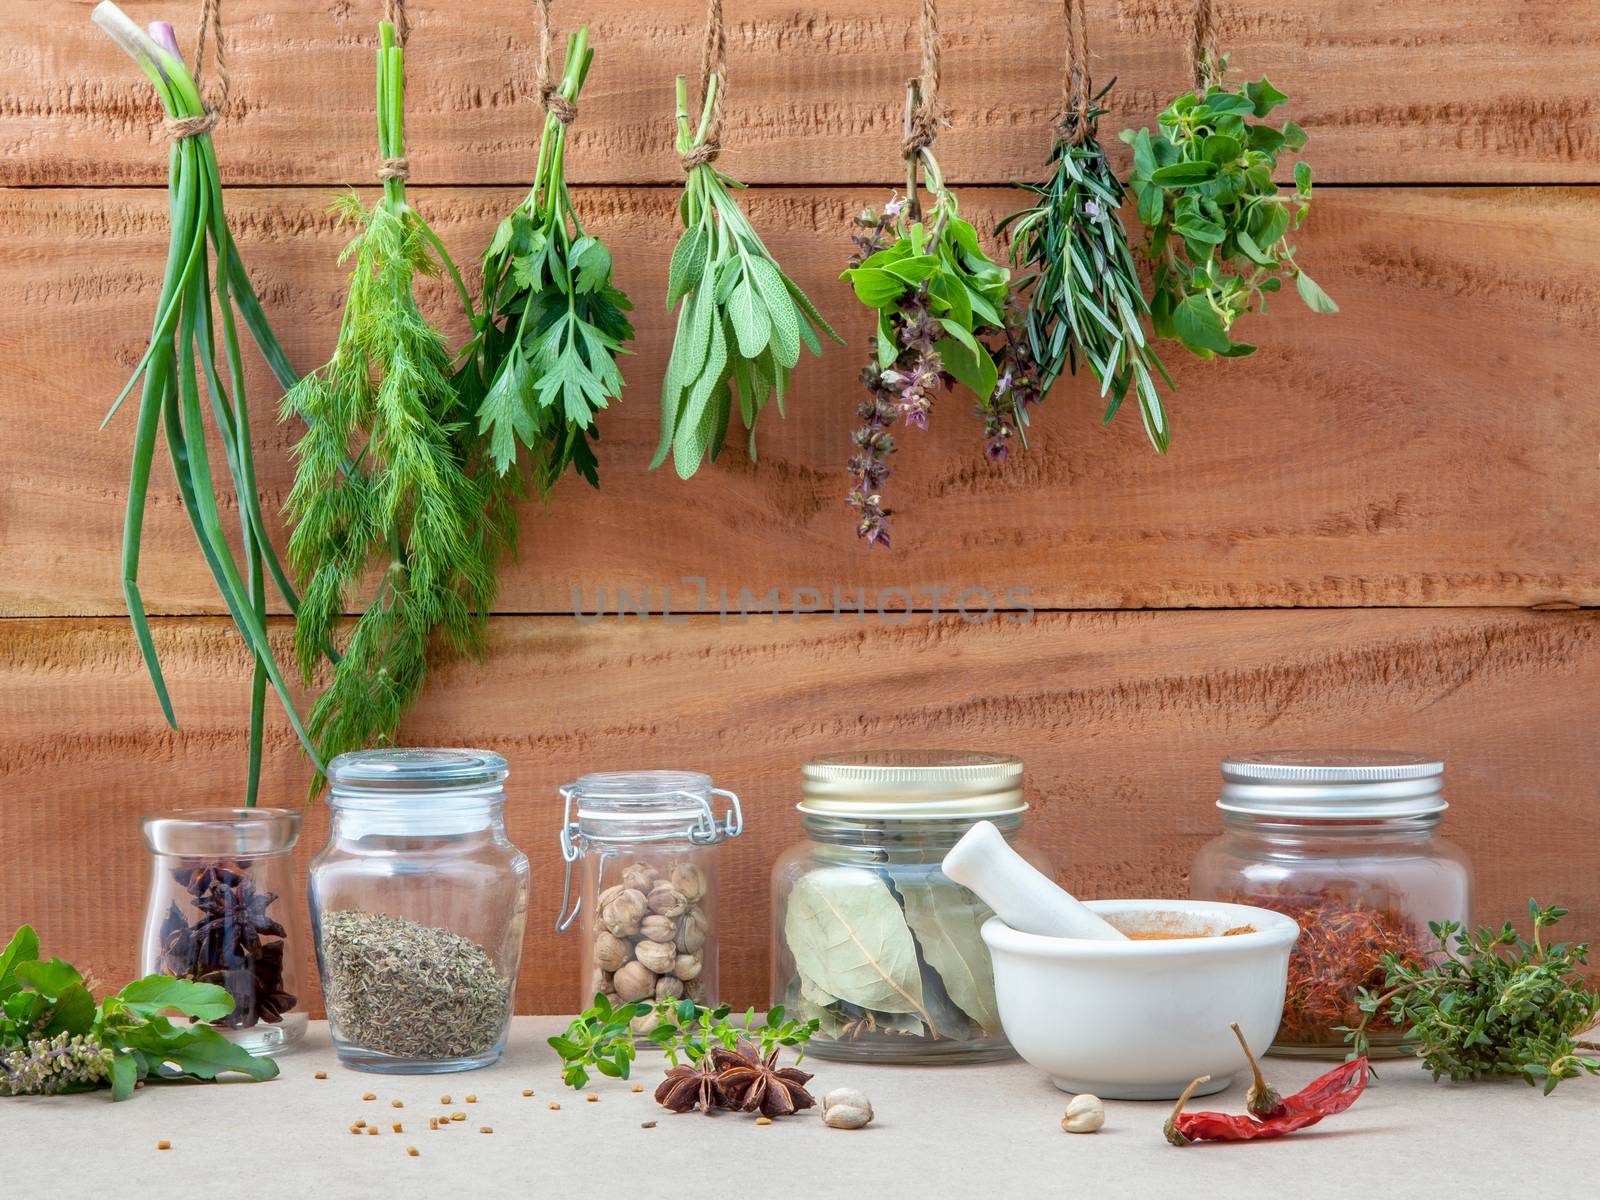 Assorted hanging herbs ,parsley ,oregano,sage,rosemary,sweet bas by kerdkanno